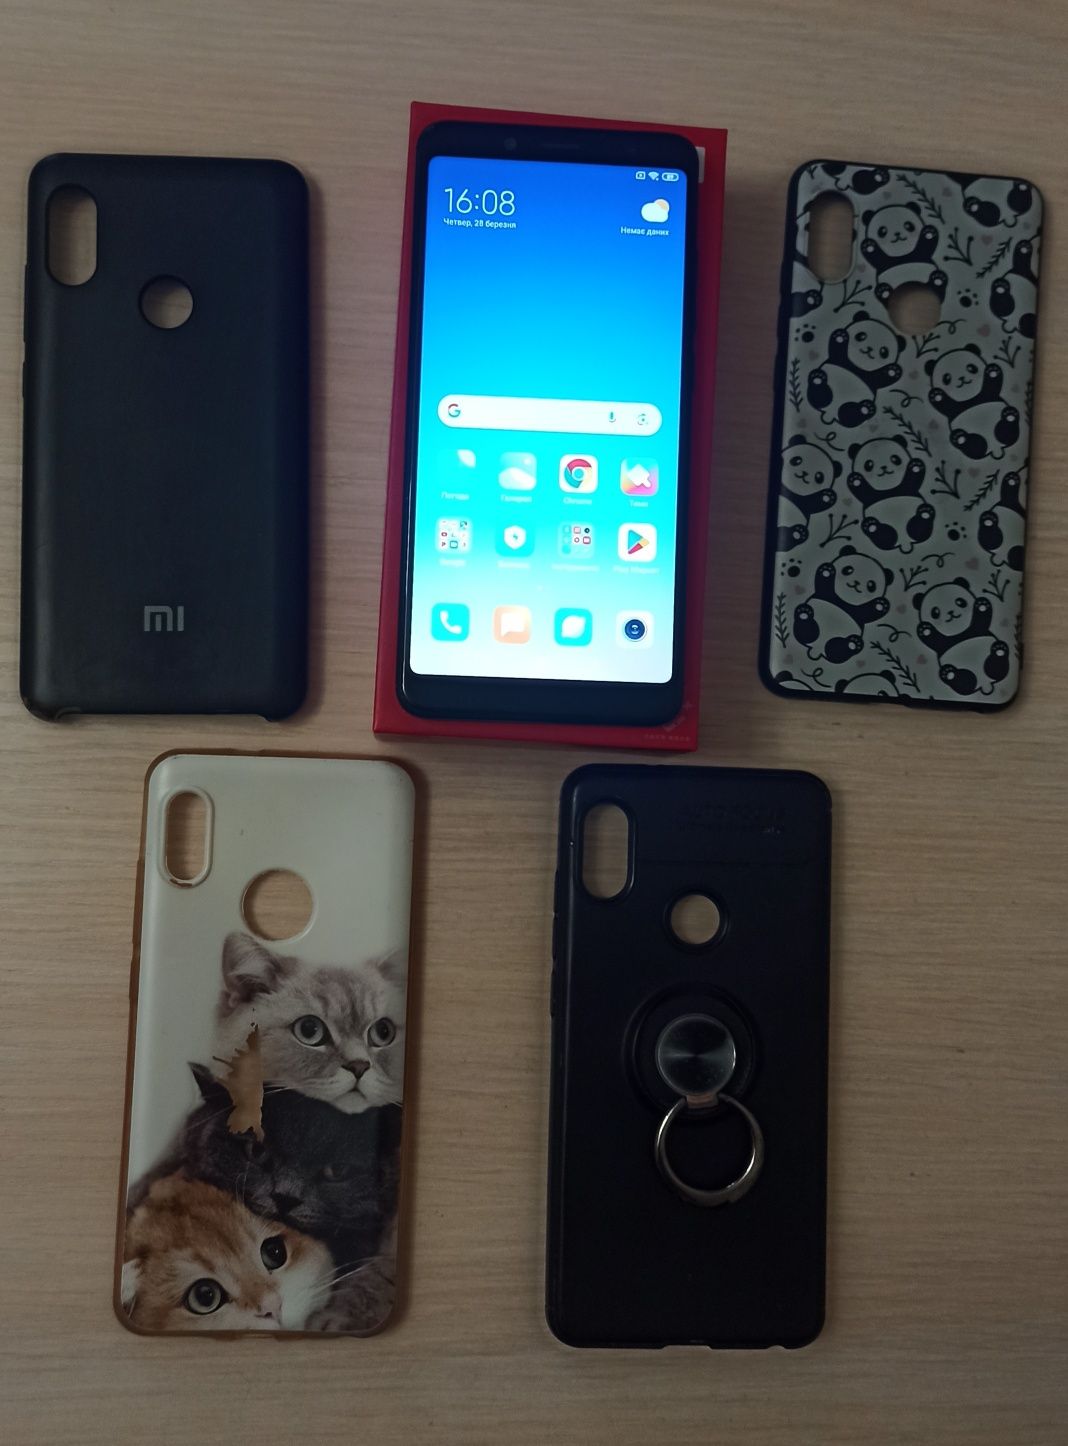 Xiaomi redmi 5 смартфон